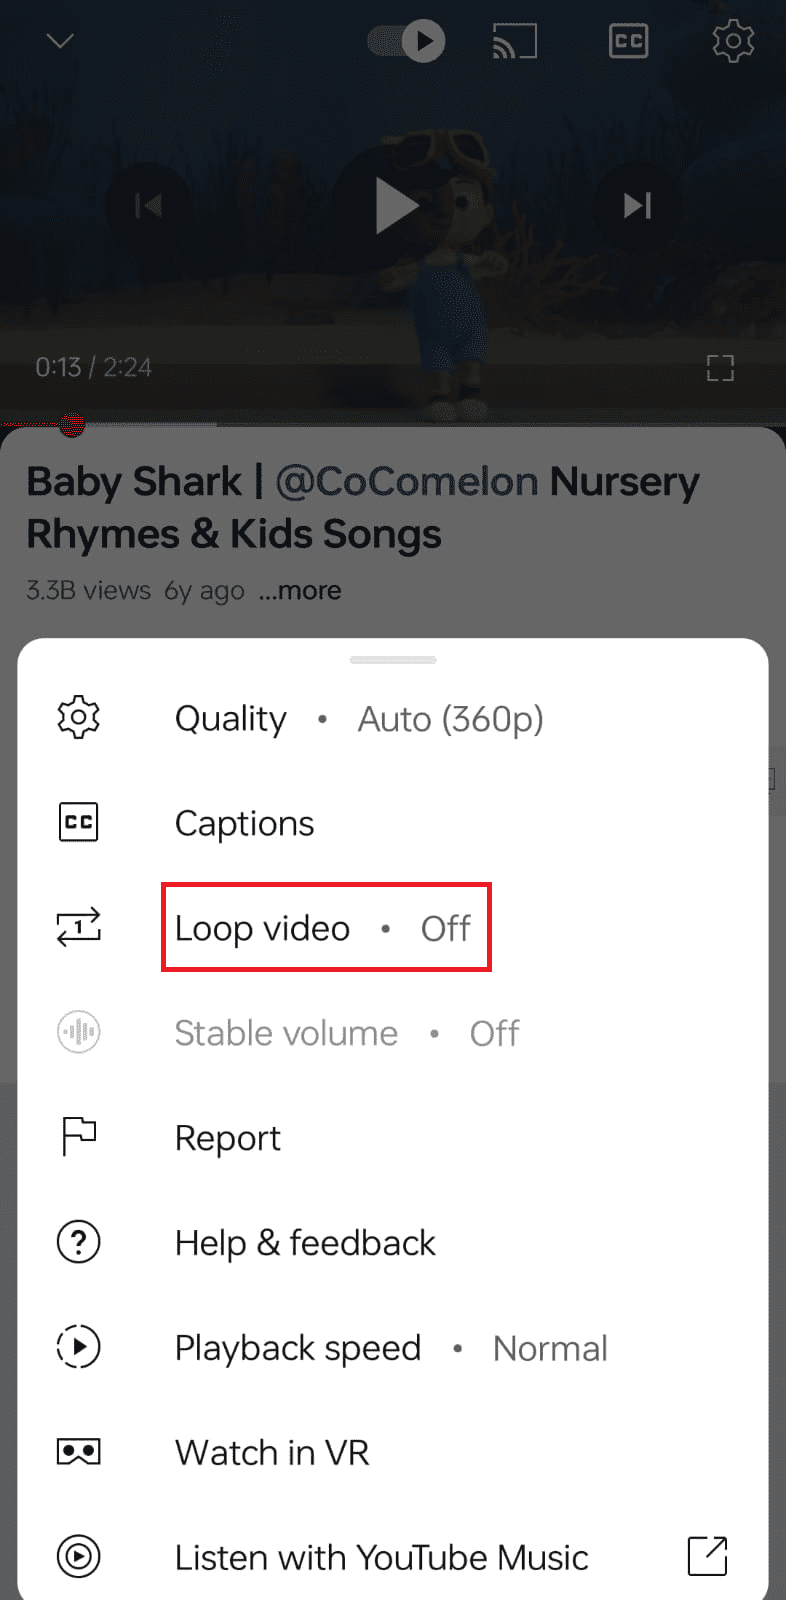 Tap on loop video